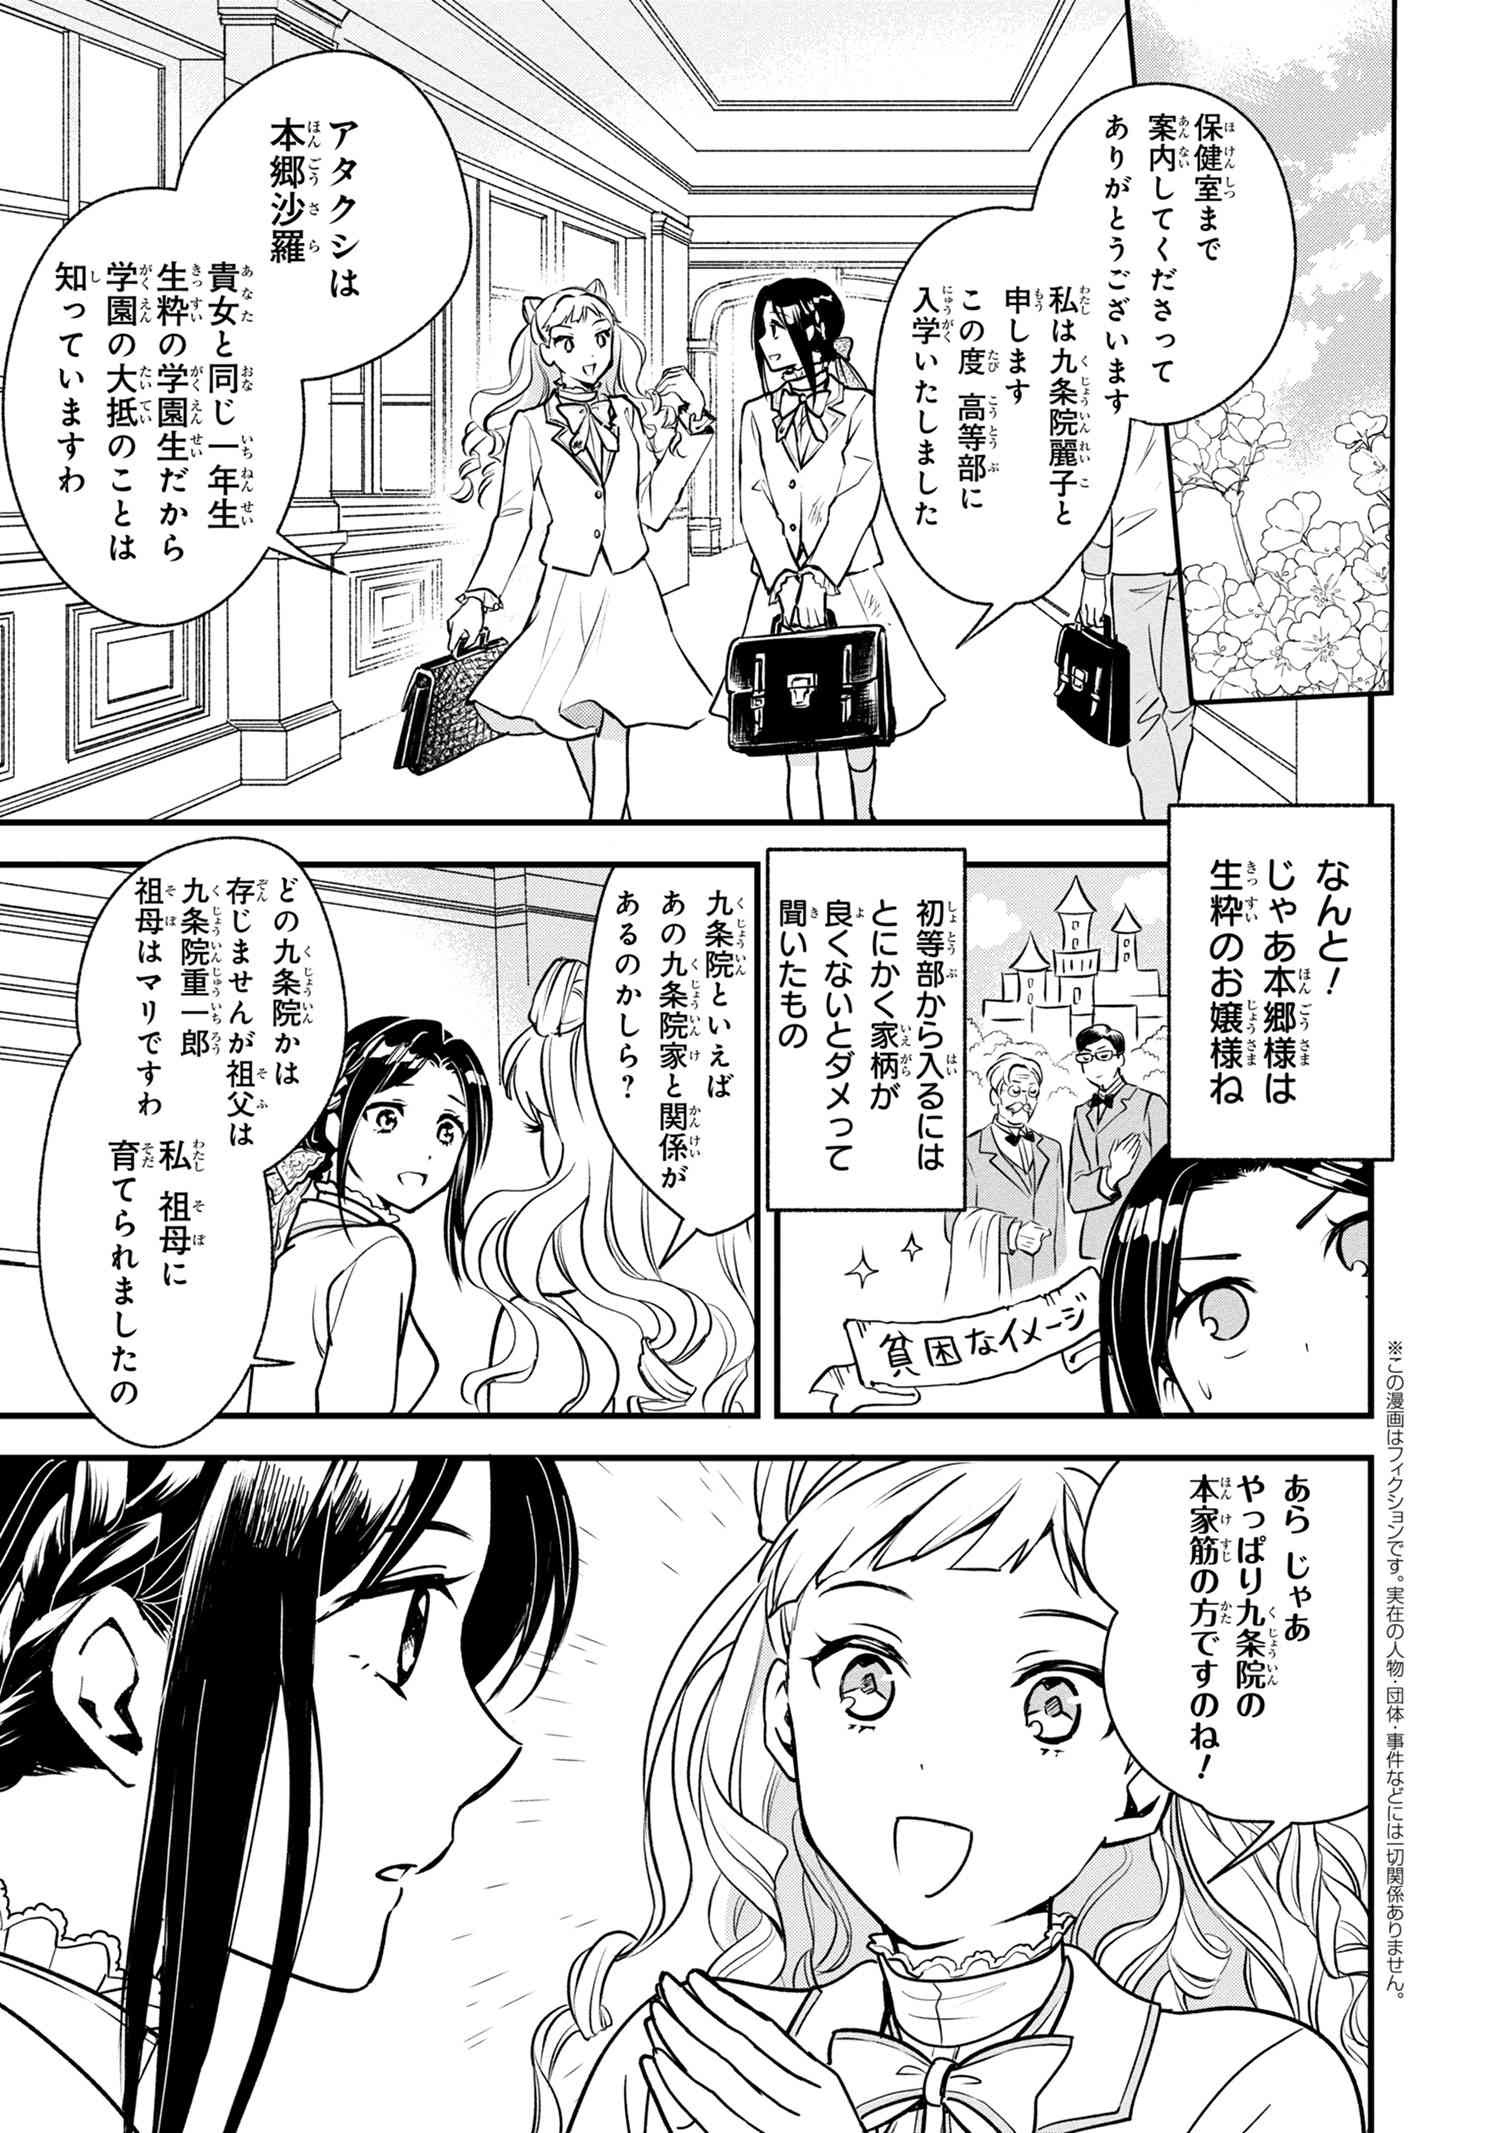 Reiko no Fuugi Akuyaku Reijou to Yobarete imasu ga, tada no Binbou Musume desu - Chapter 1-2 - Page 1